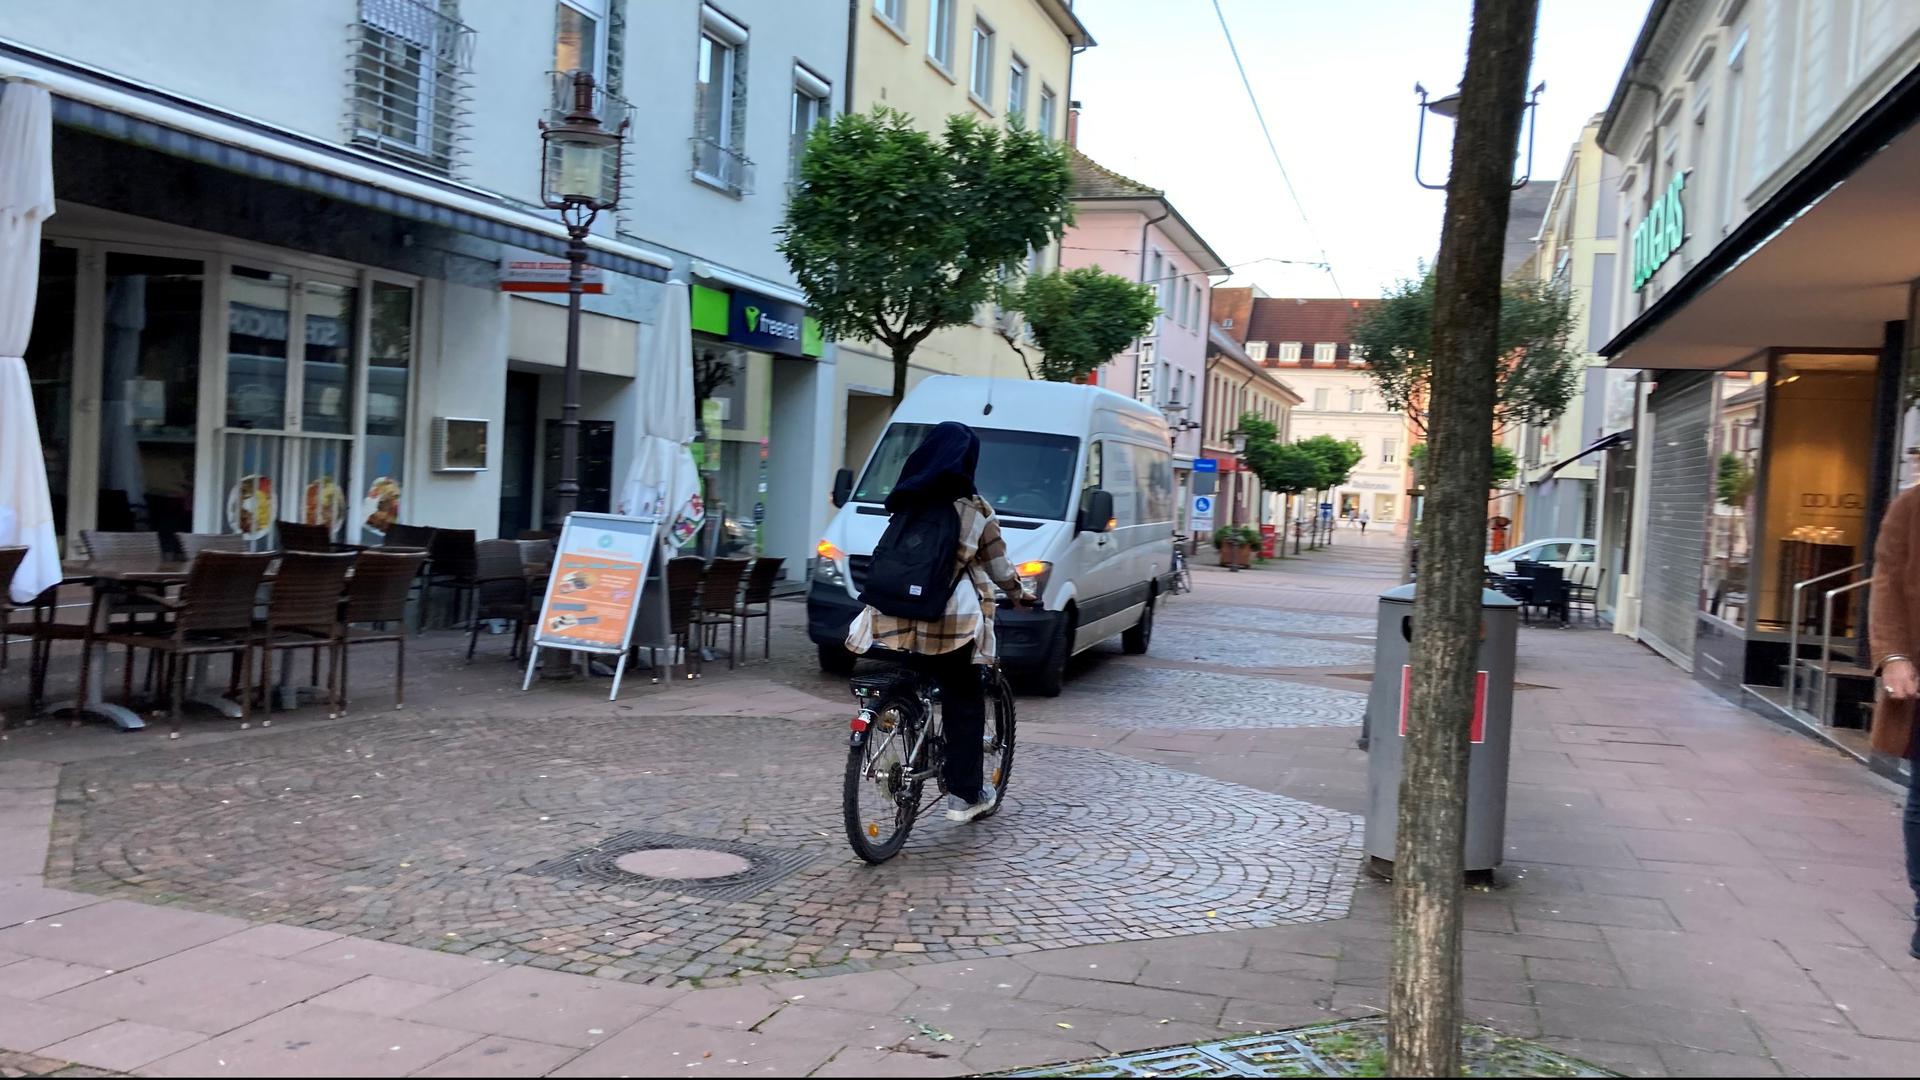 Radfahren verboten: Eine Frau fährt mit ihrem Fahrrad durch die Poststraße. Die Menschen in Rastatt haben unterschiedliche Meinungen über das unerlaubte Fahrradfahren in der Fußgängerzonen.